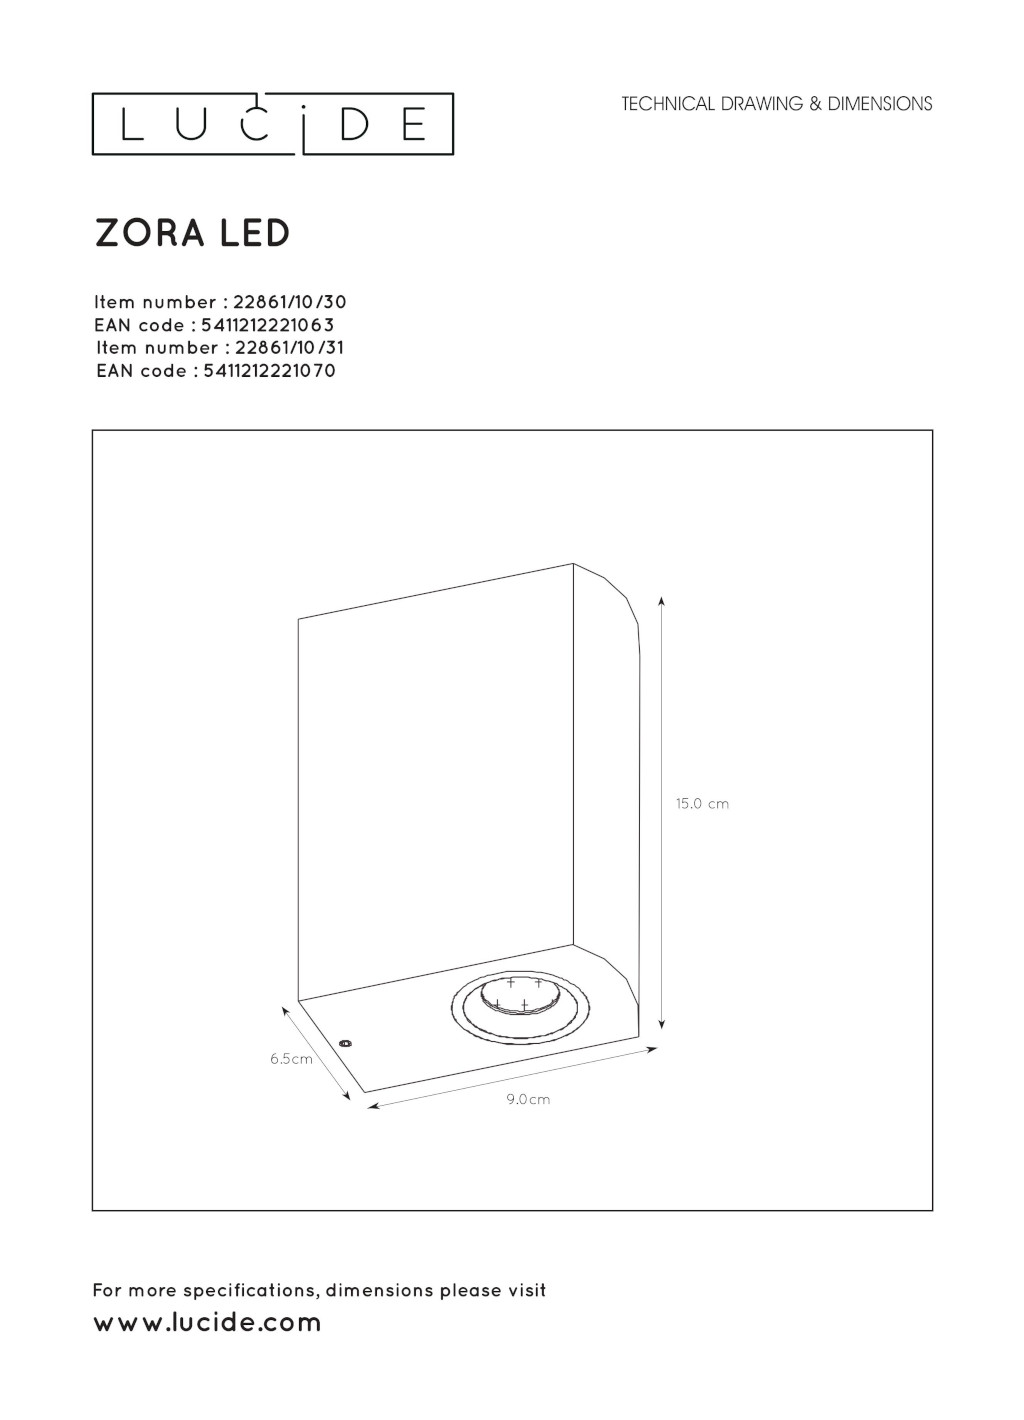 Kinkiet Zora-LED 22861/10/30 2xGU10 wymiary